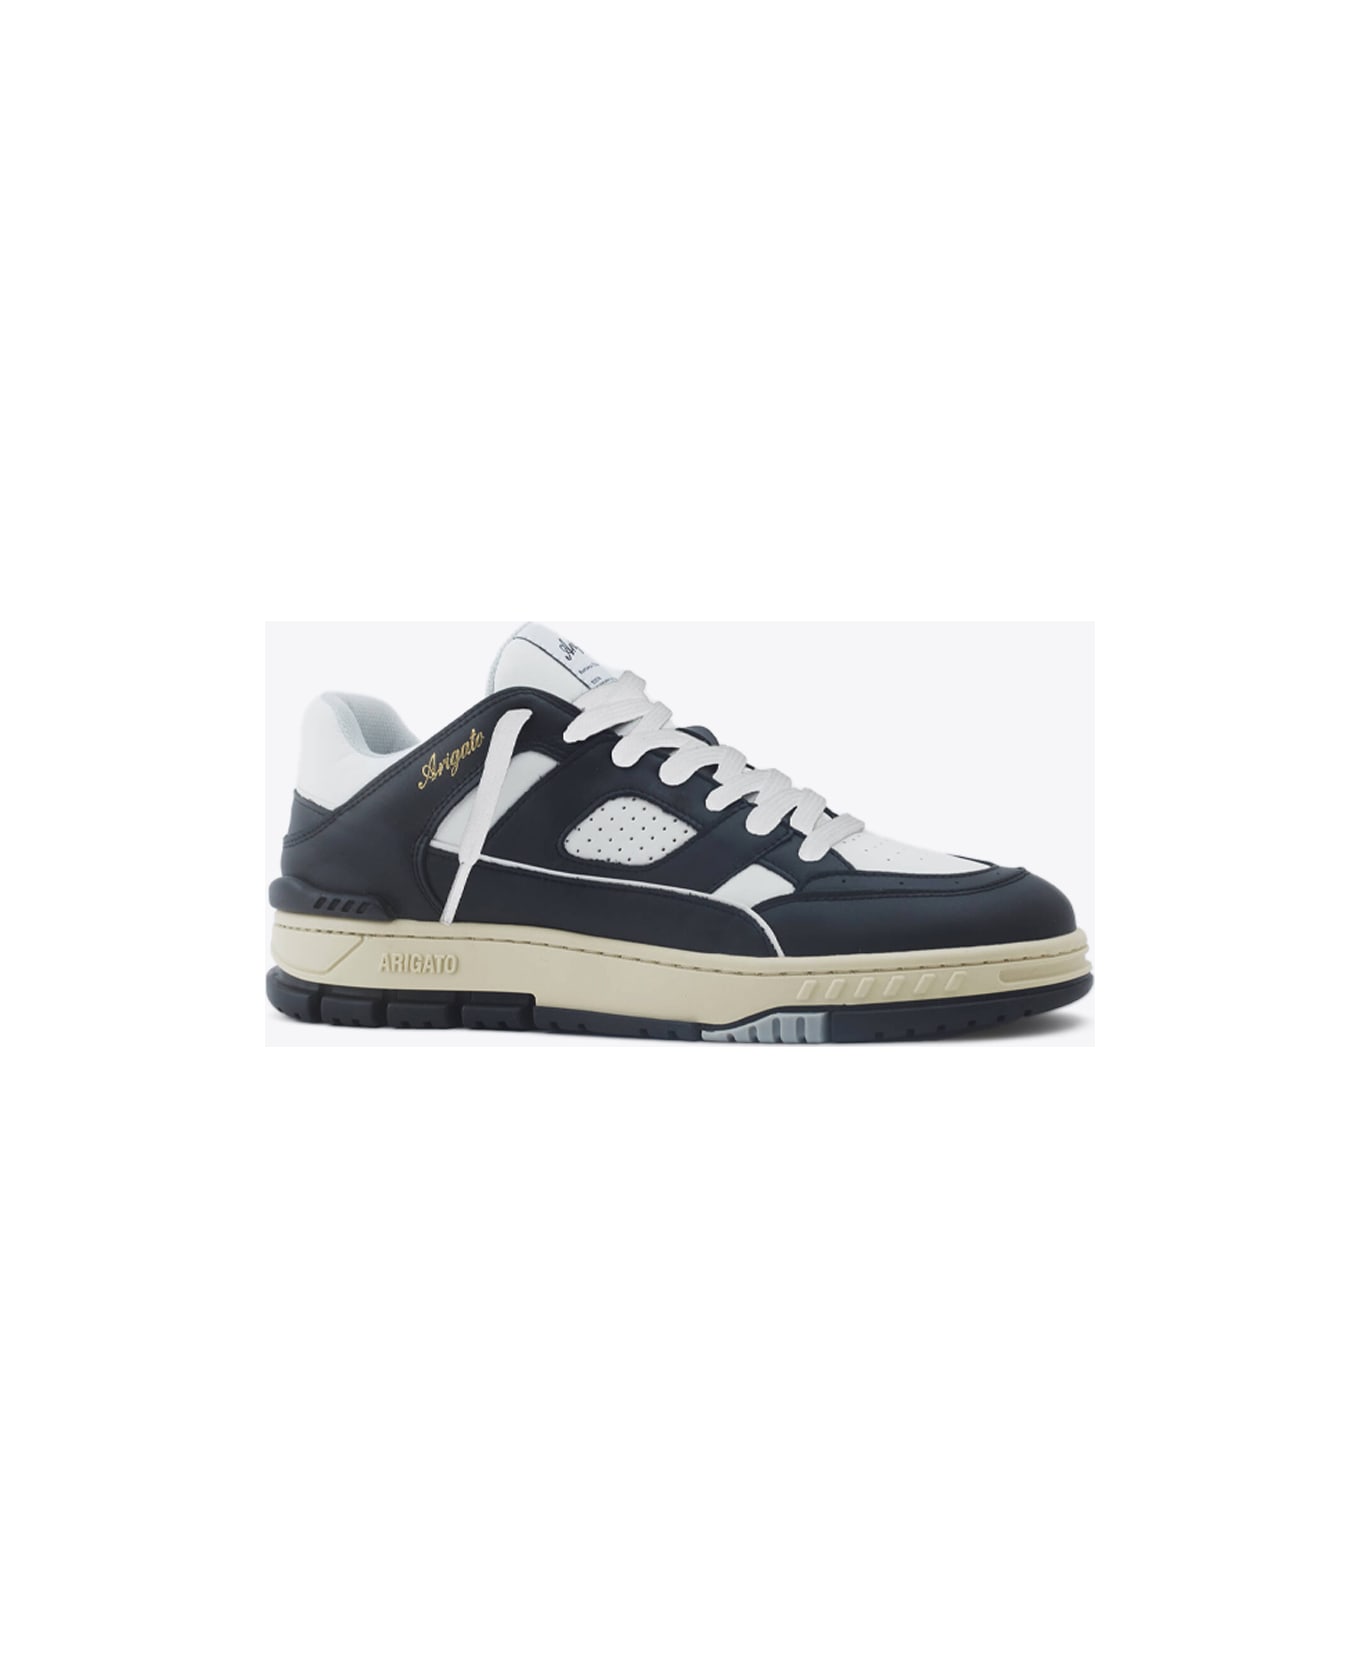 Axel Arigato Area Lo Sneaker Black and white leather lace-up low sneaker - Area Lo sneaker - Bianco/nero スニーカー